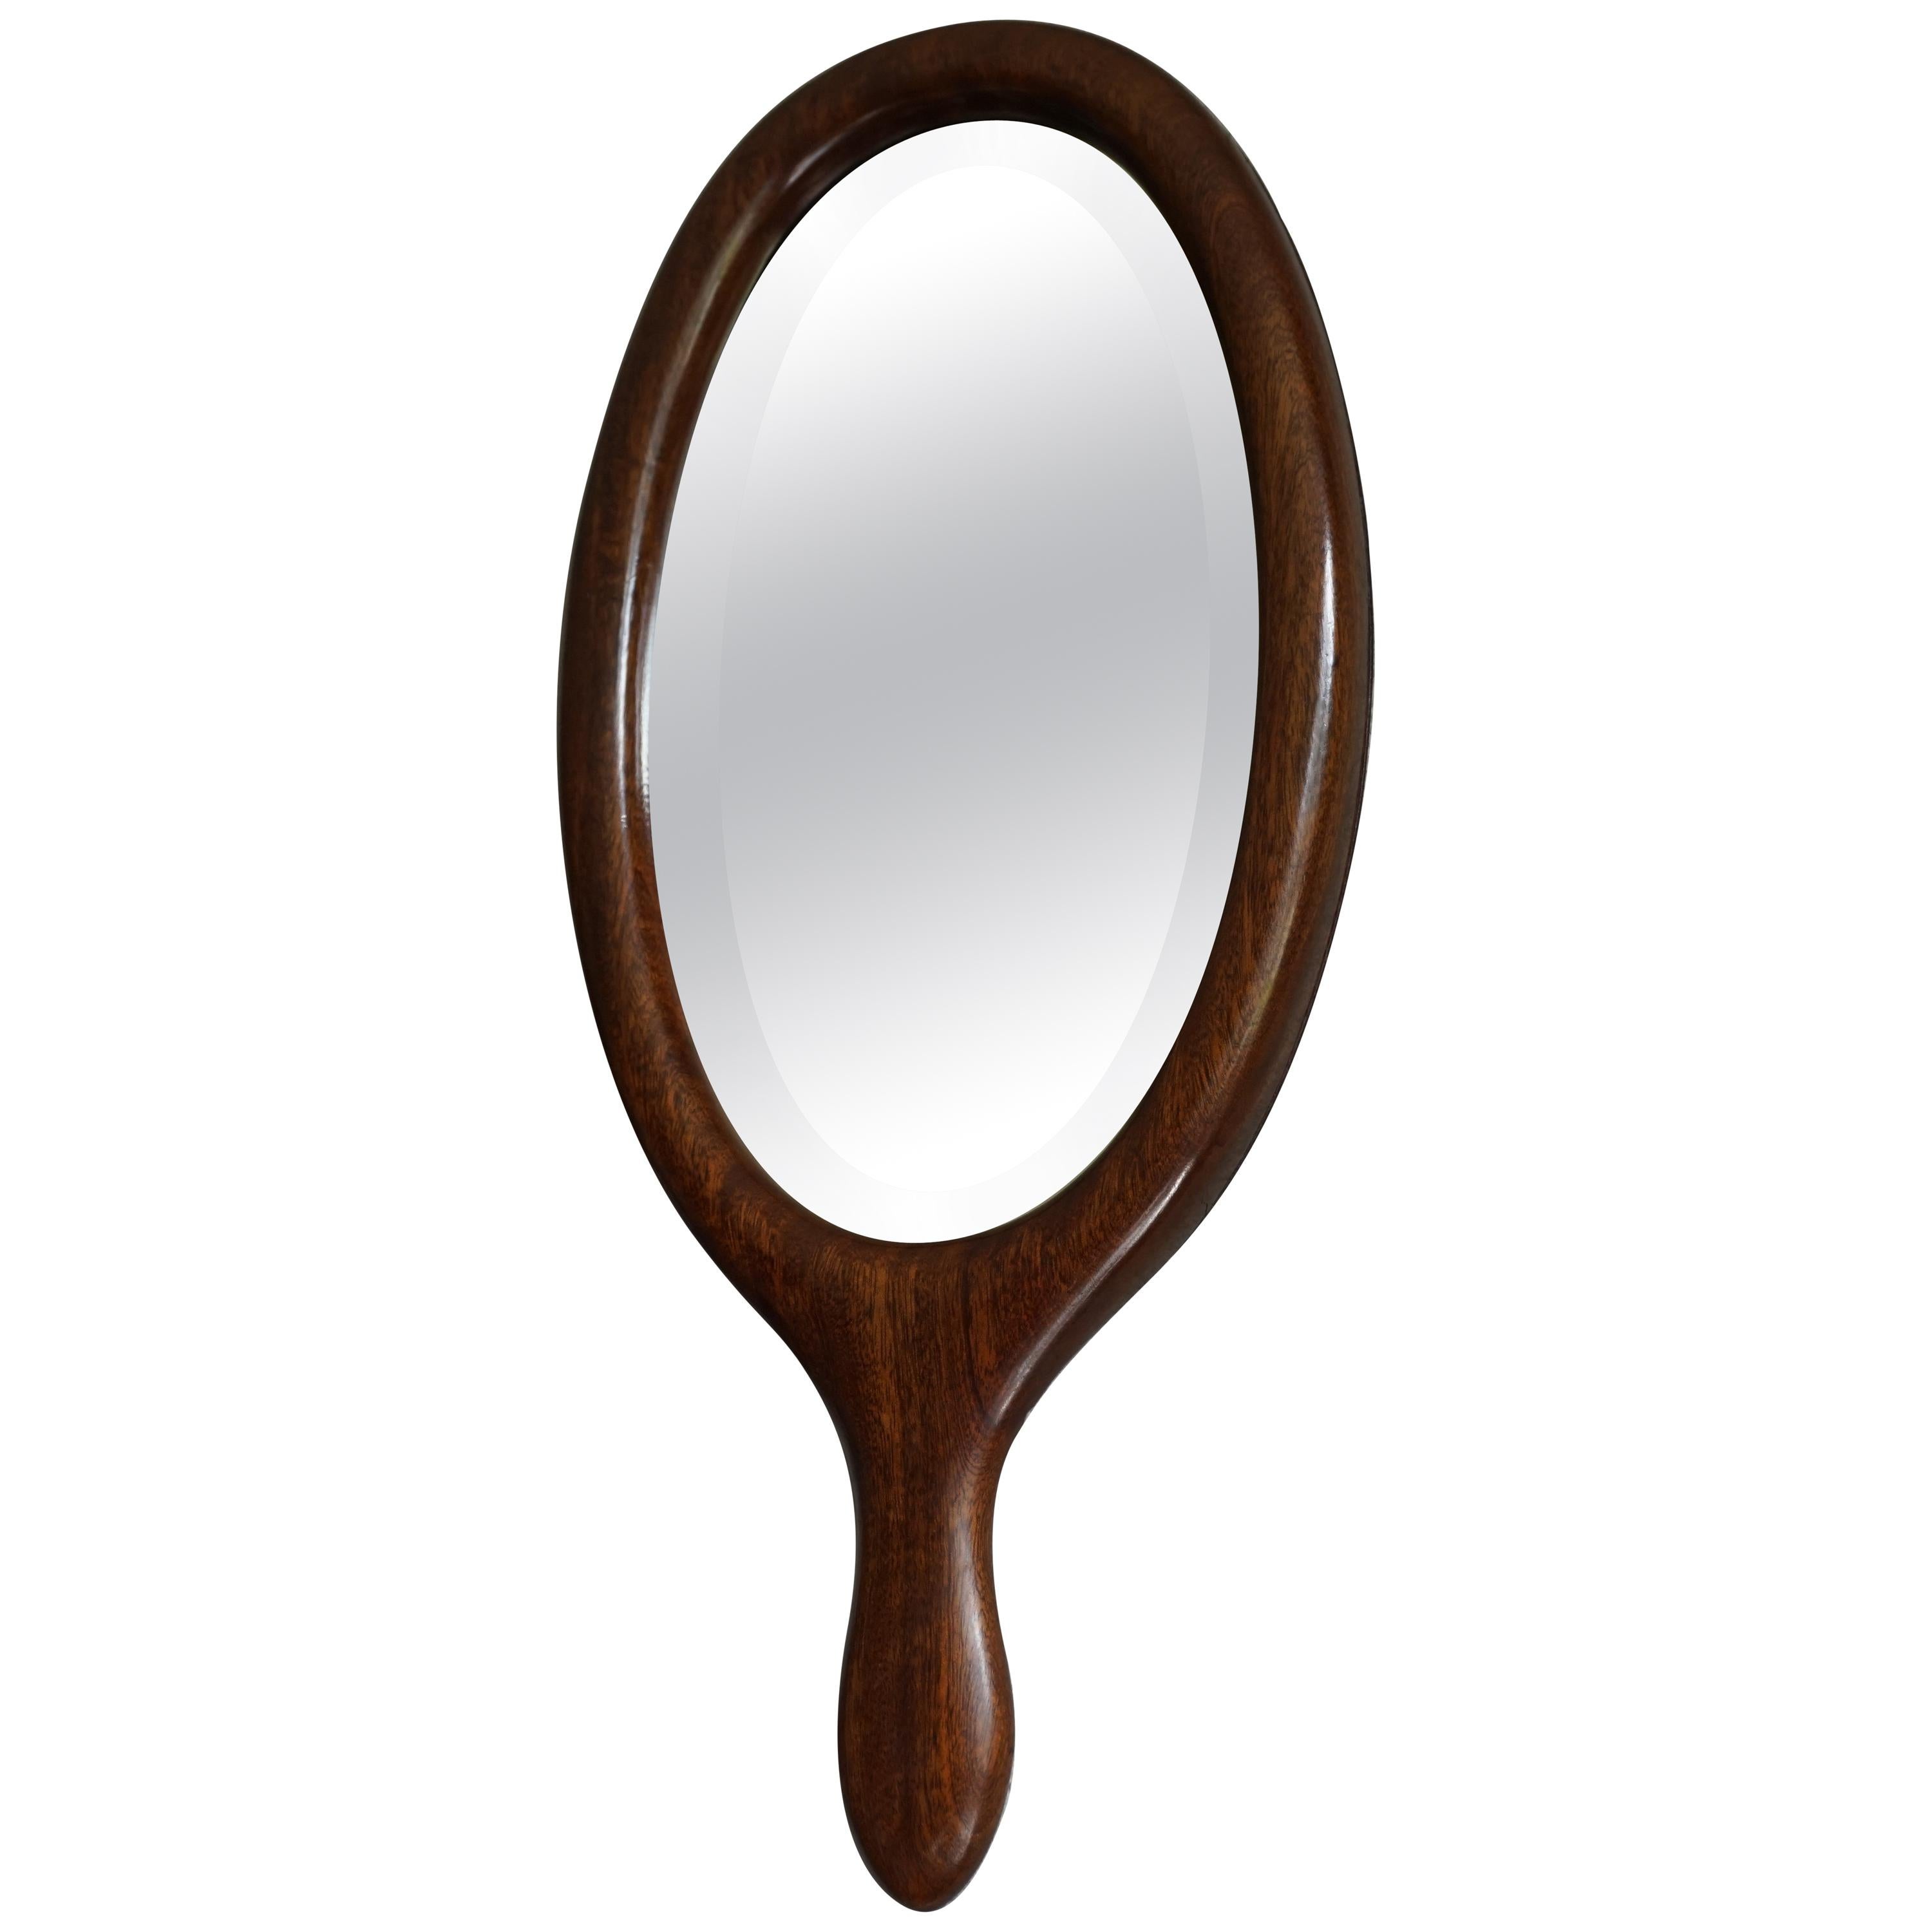 Miroir de coiffeuse ou de vanité ancien du 19ème siècle en bois de noyer et verre biseauté, fabriqué à la main